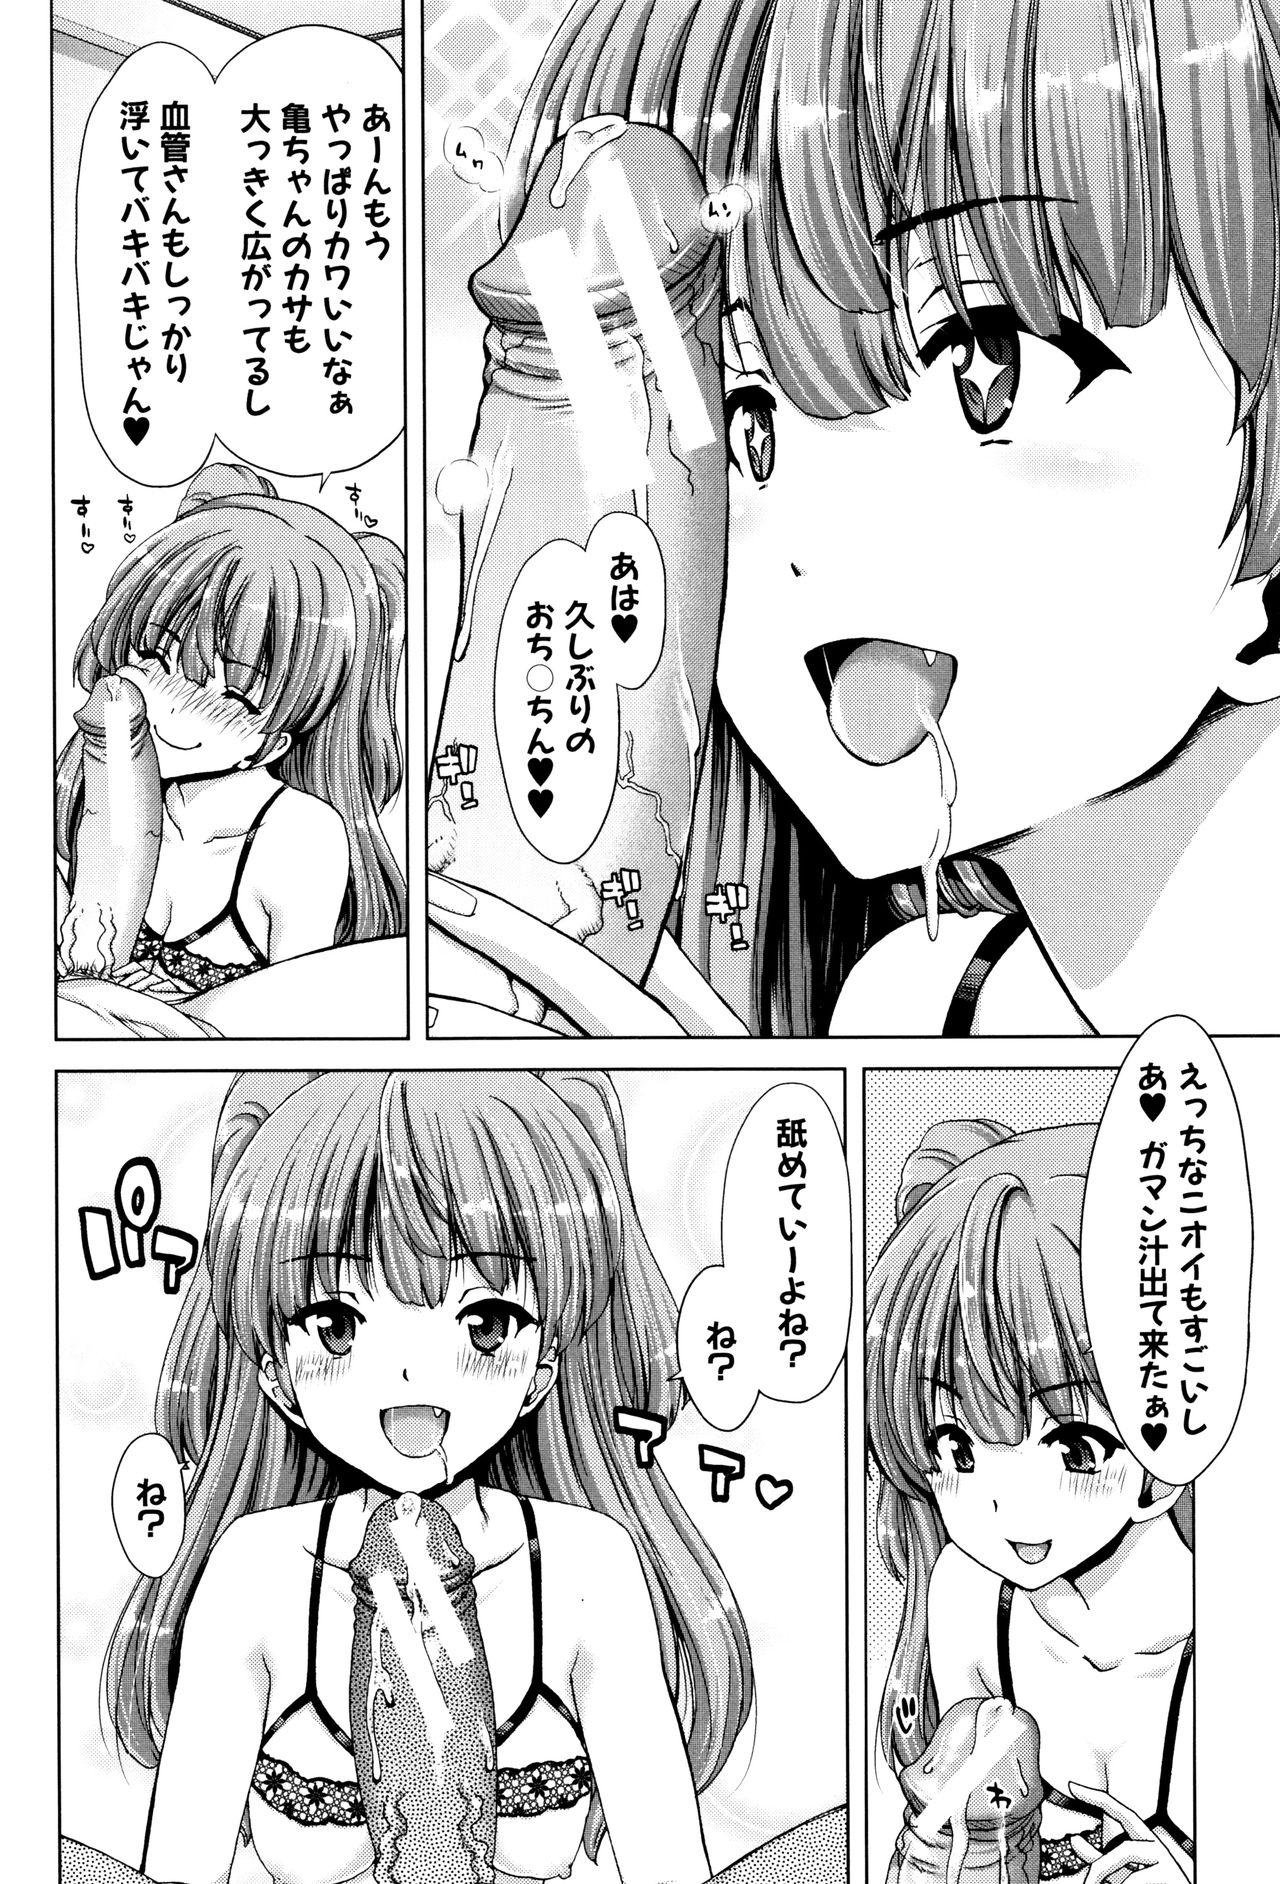 Sister Imouto dakedo Oniichan, H Shiyo! H Shiyo! H Shiyou yo! Man - Page 6